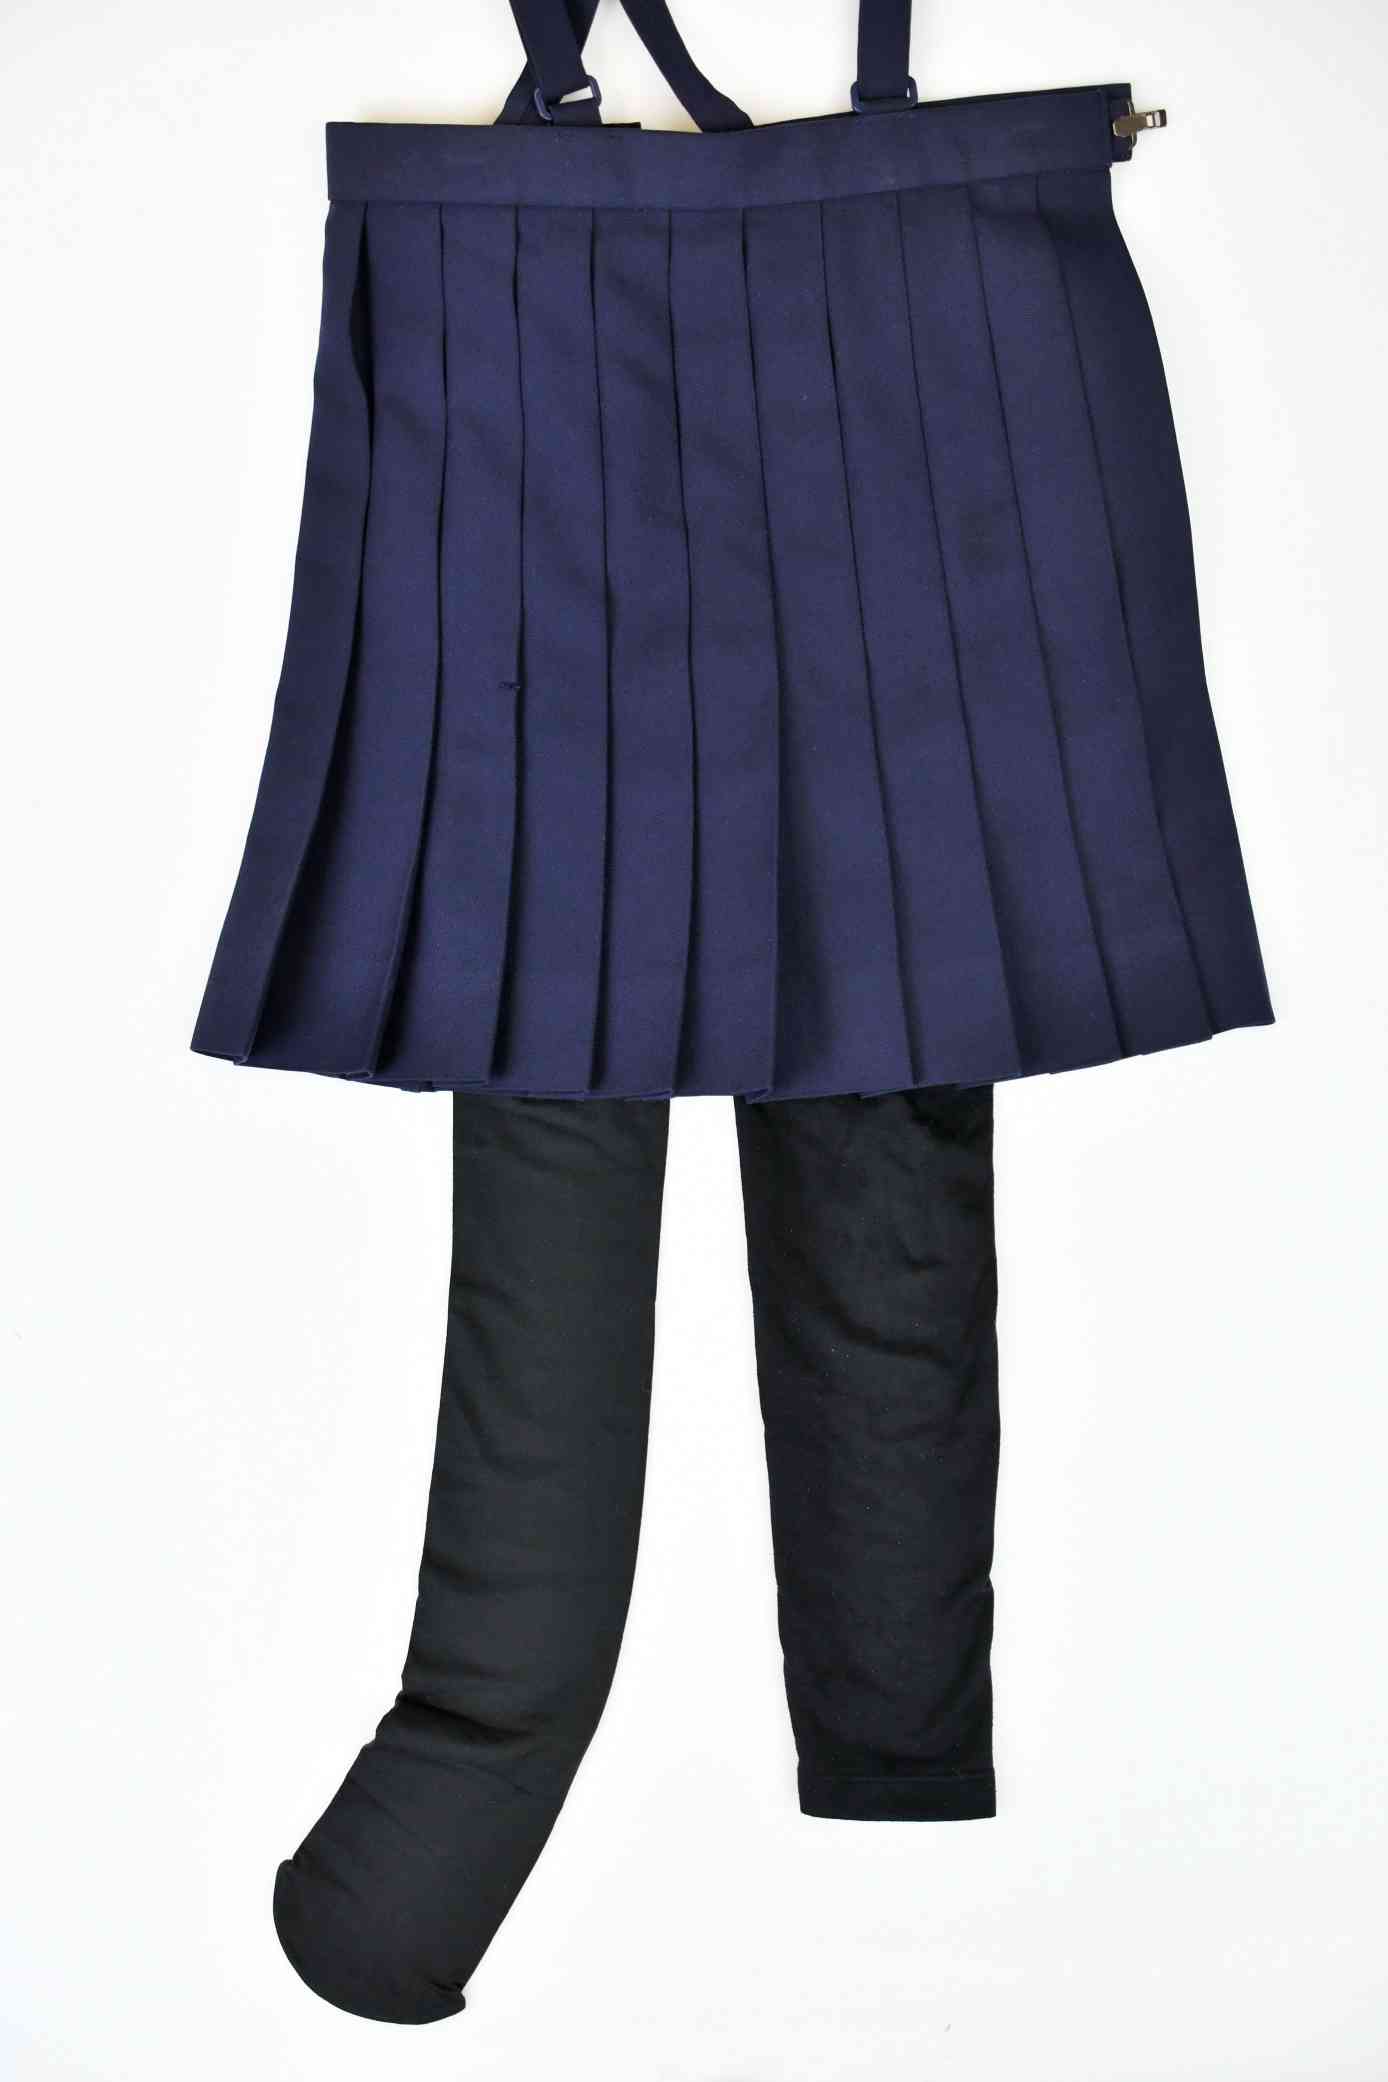 標準服のスカートなどの下にはくタイツ（左）と、一部の小学校では着用が認められていないレギンス